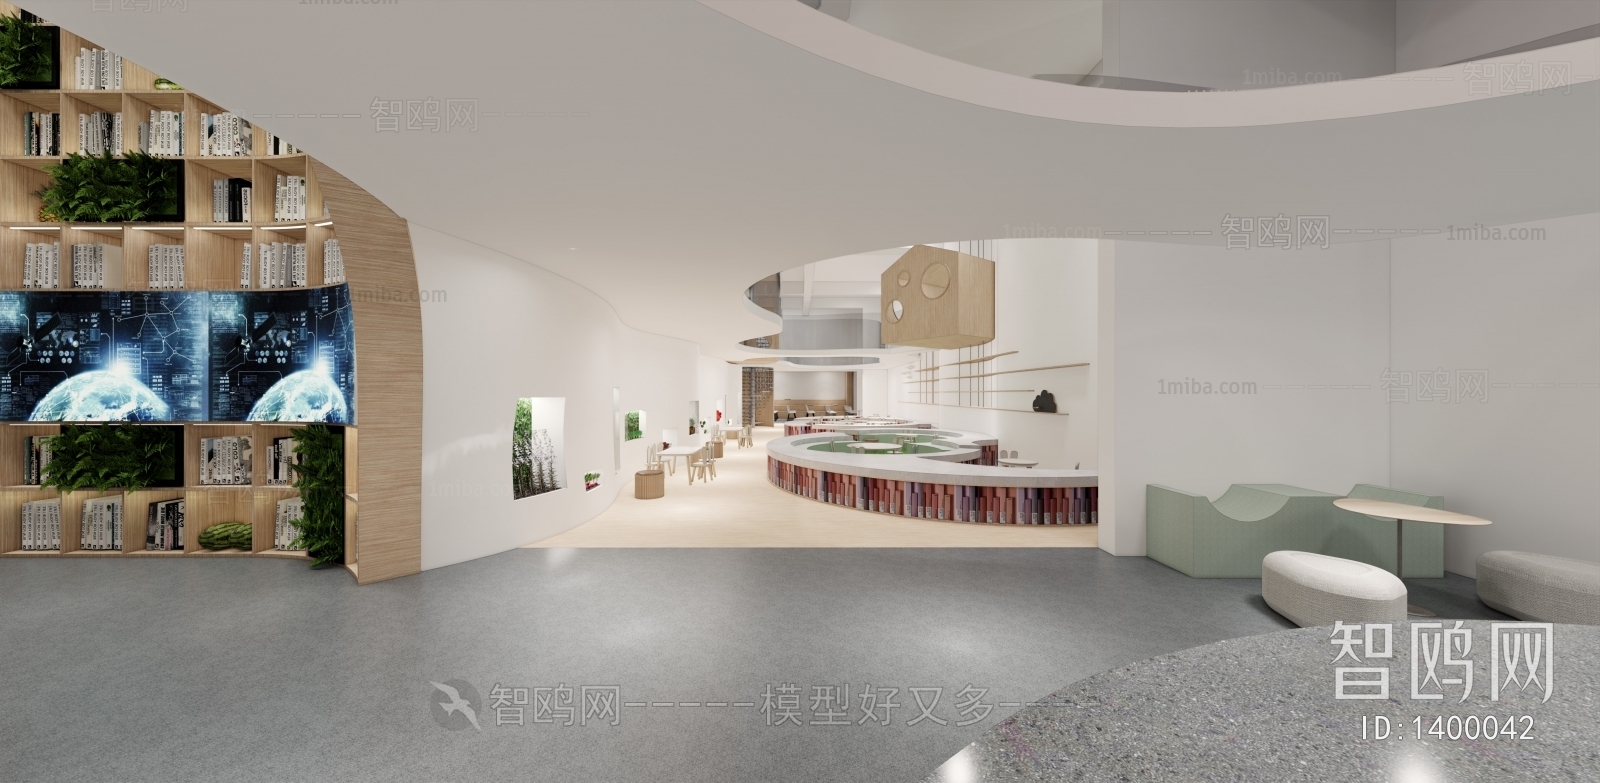 现代咖啡厅图书馆3D模型下载